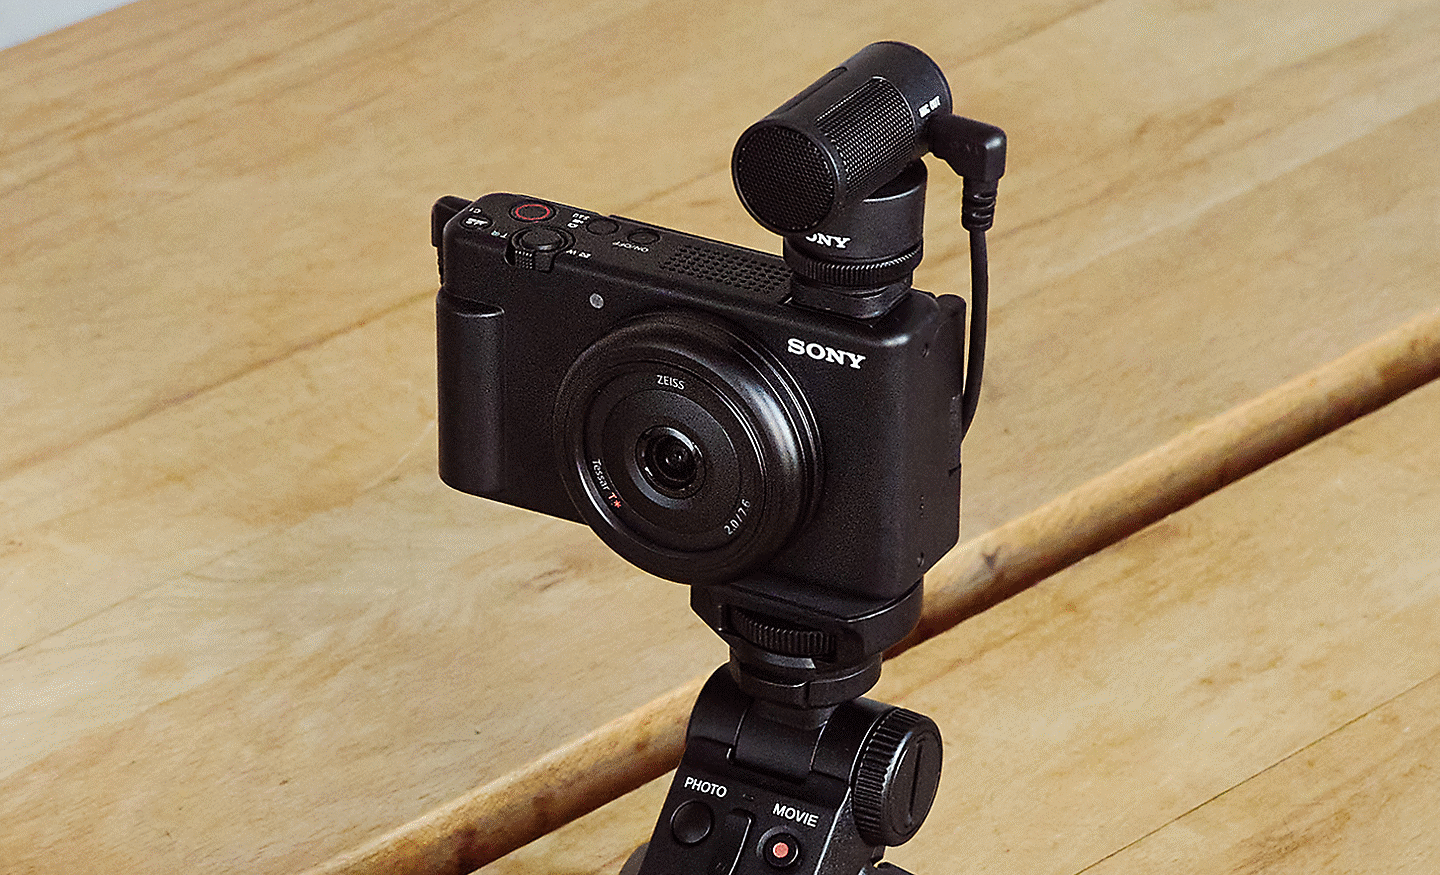 ECM-W2BT kablosuz mikrofon kullanarak fotoğraf makinesi ve çekim çubuğu ile selfie çeken bir kullanıcının görüntüsü